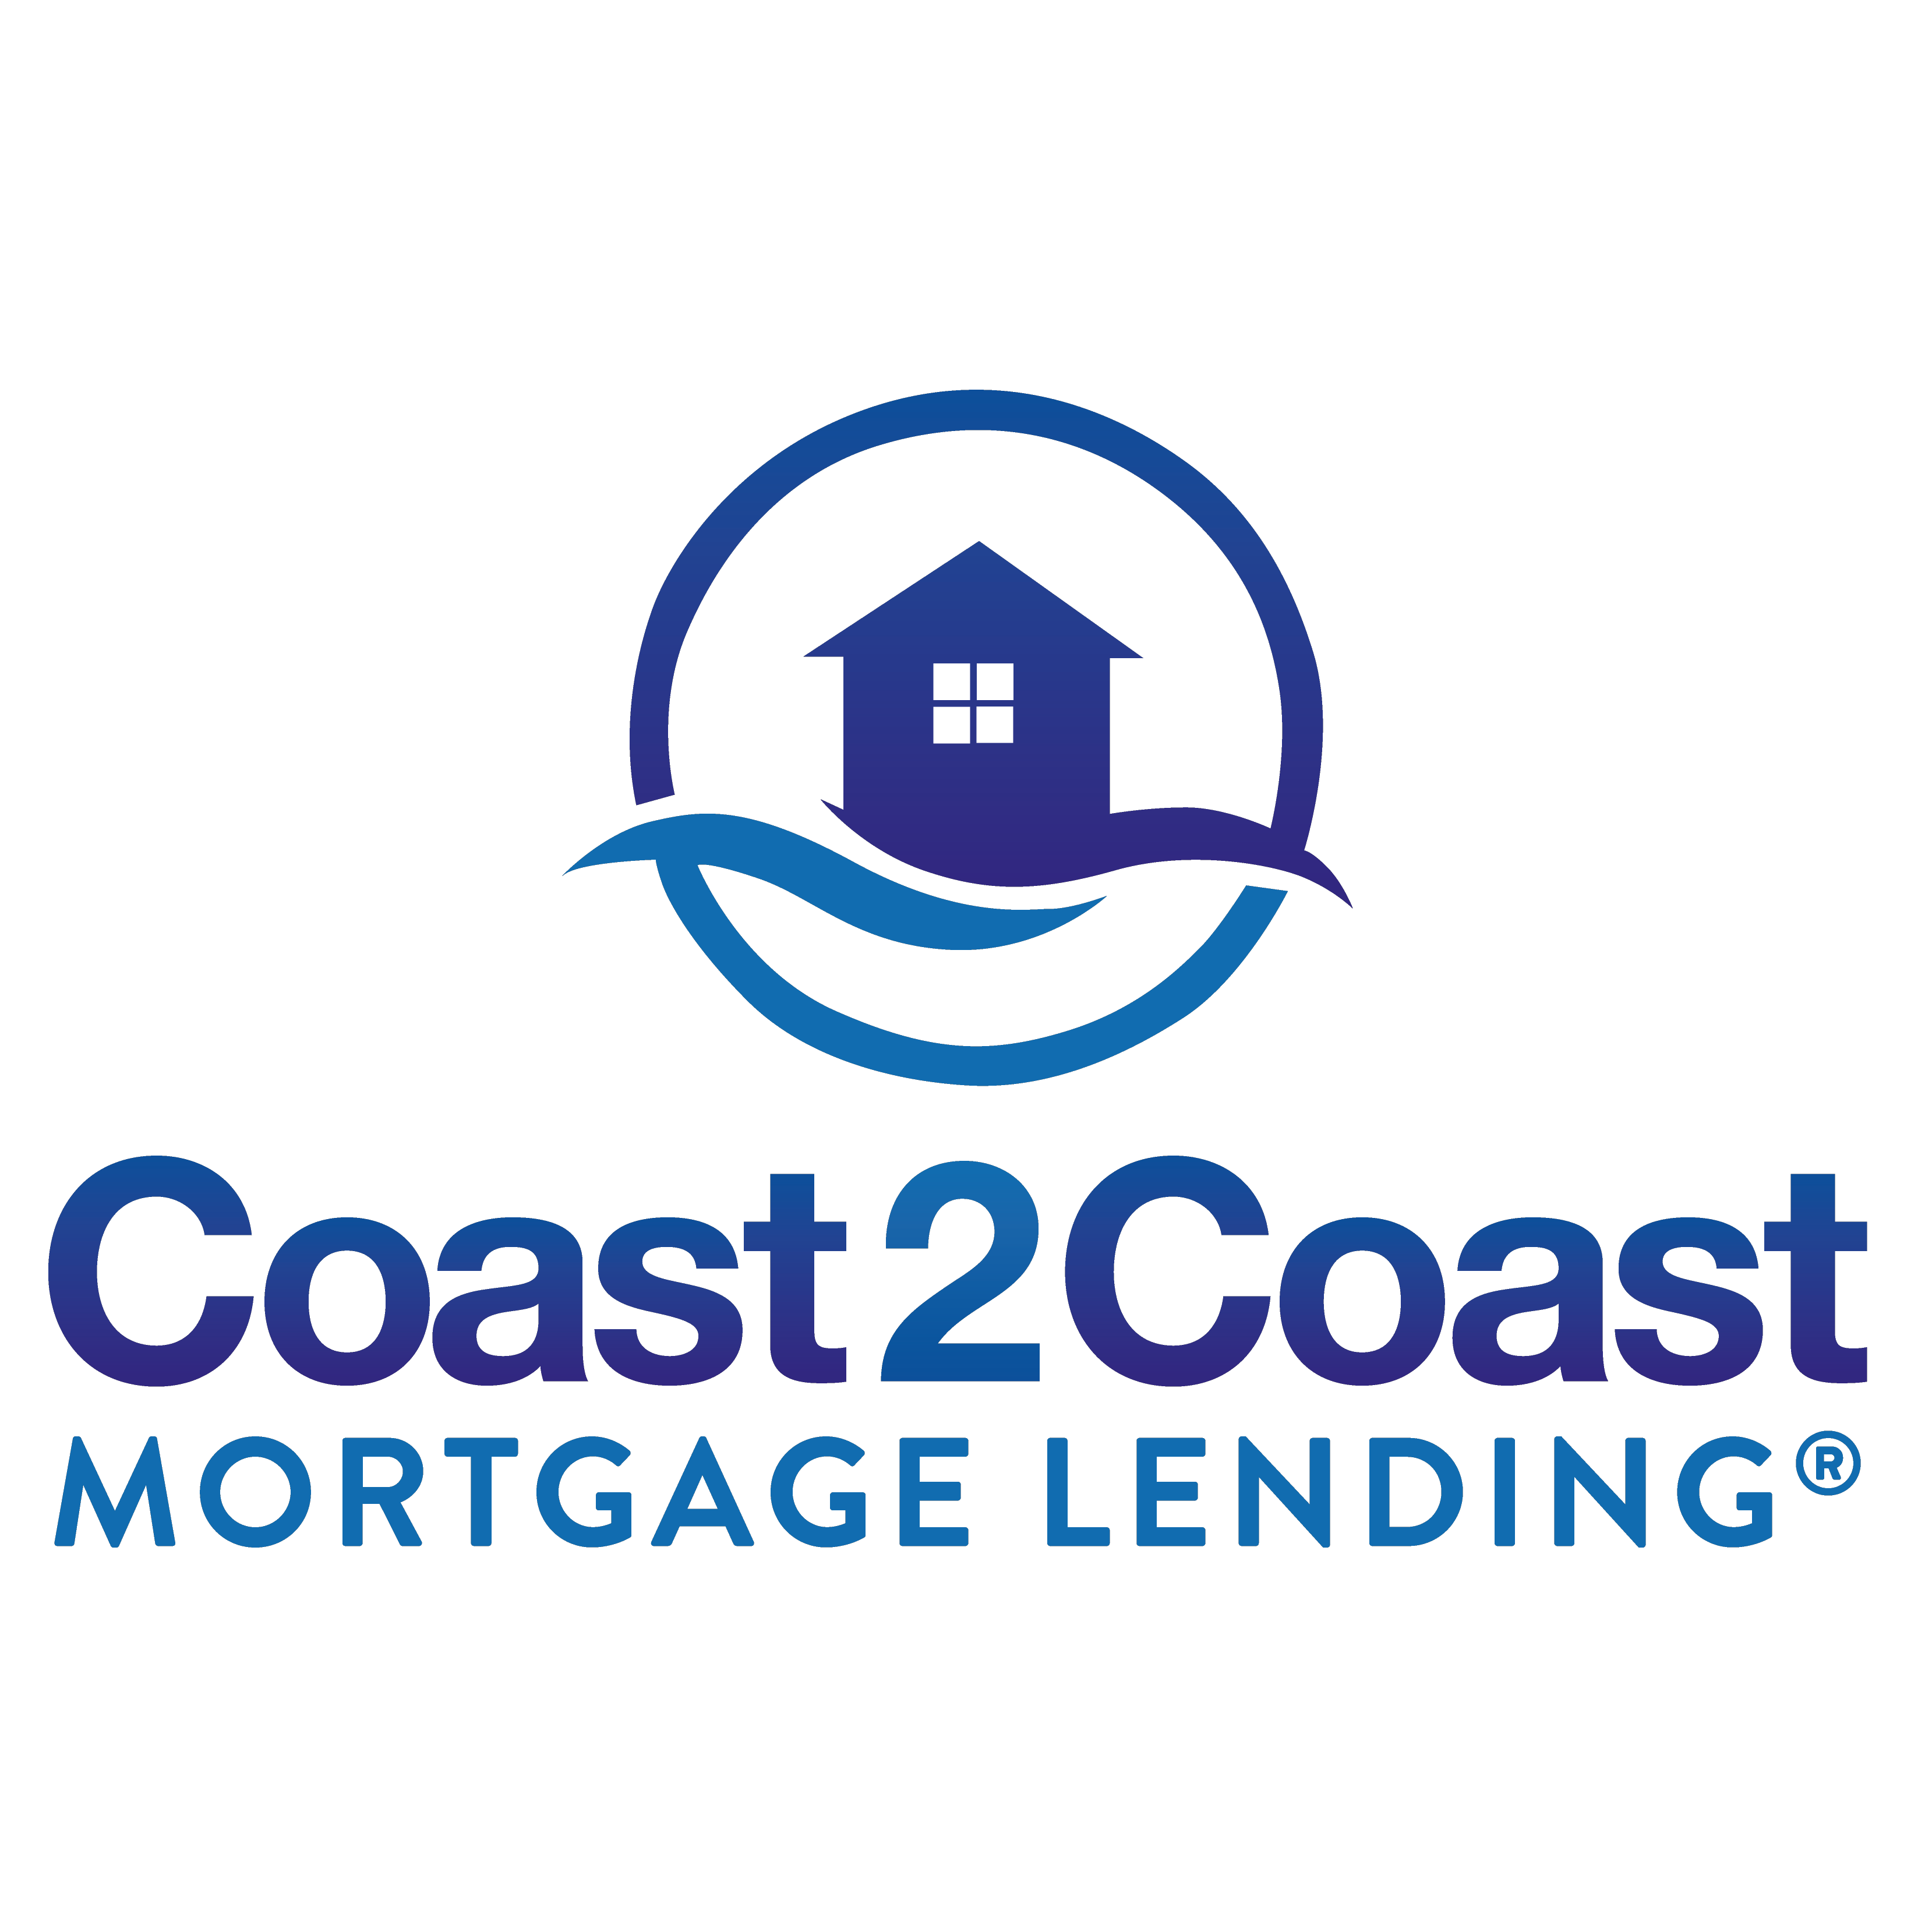 Sam Lochamy - Coast2Coast Mortgage Lending - Pelham, AL - (205)585-0173 | ShowMeLocal.com